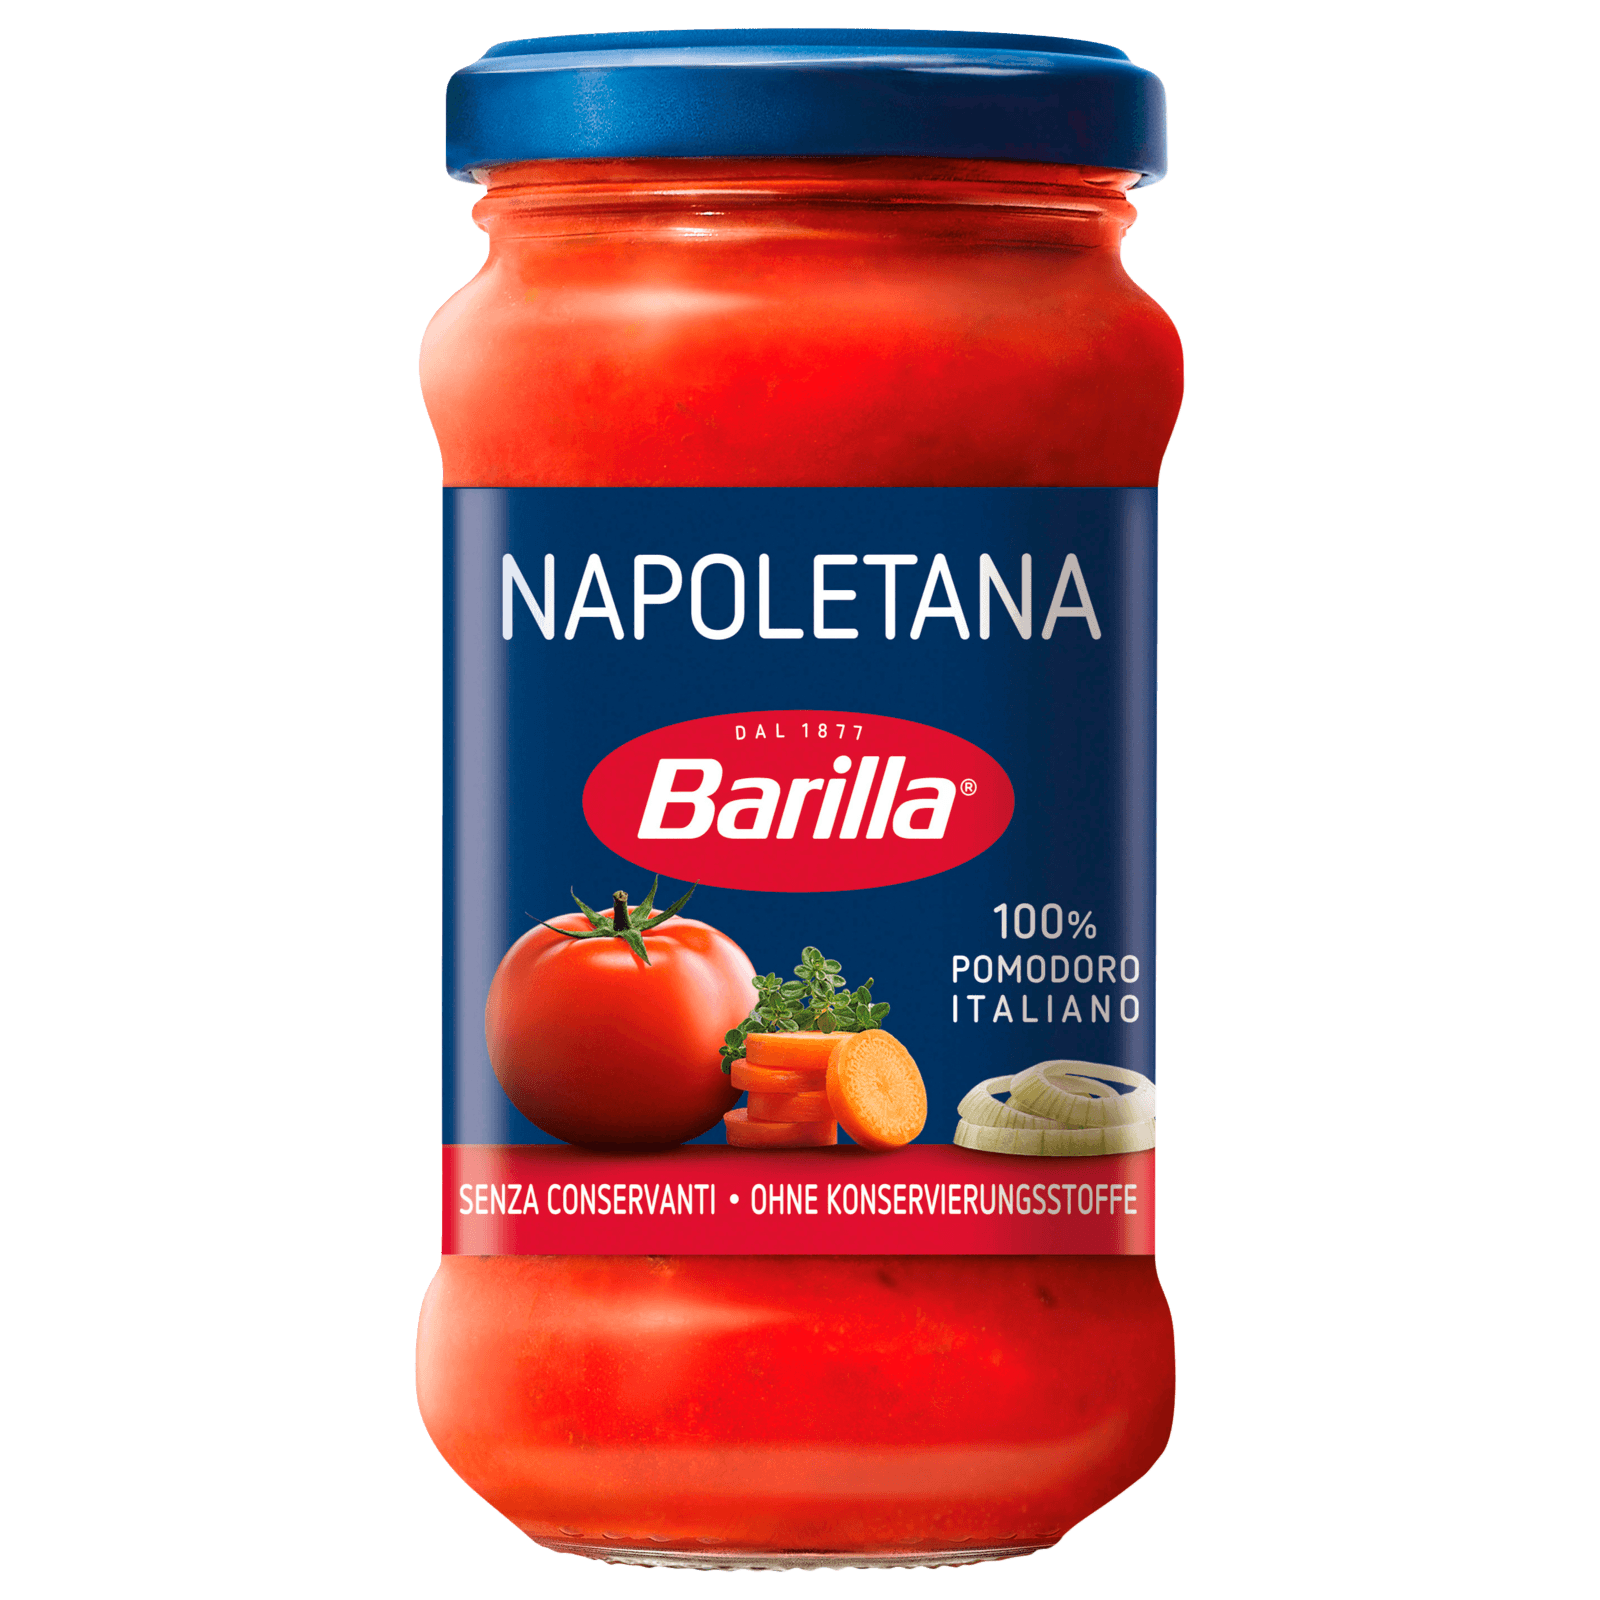 Barilla Napoletana 200g  für 2.49 EUR